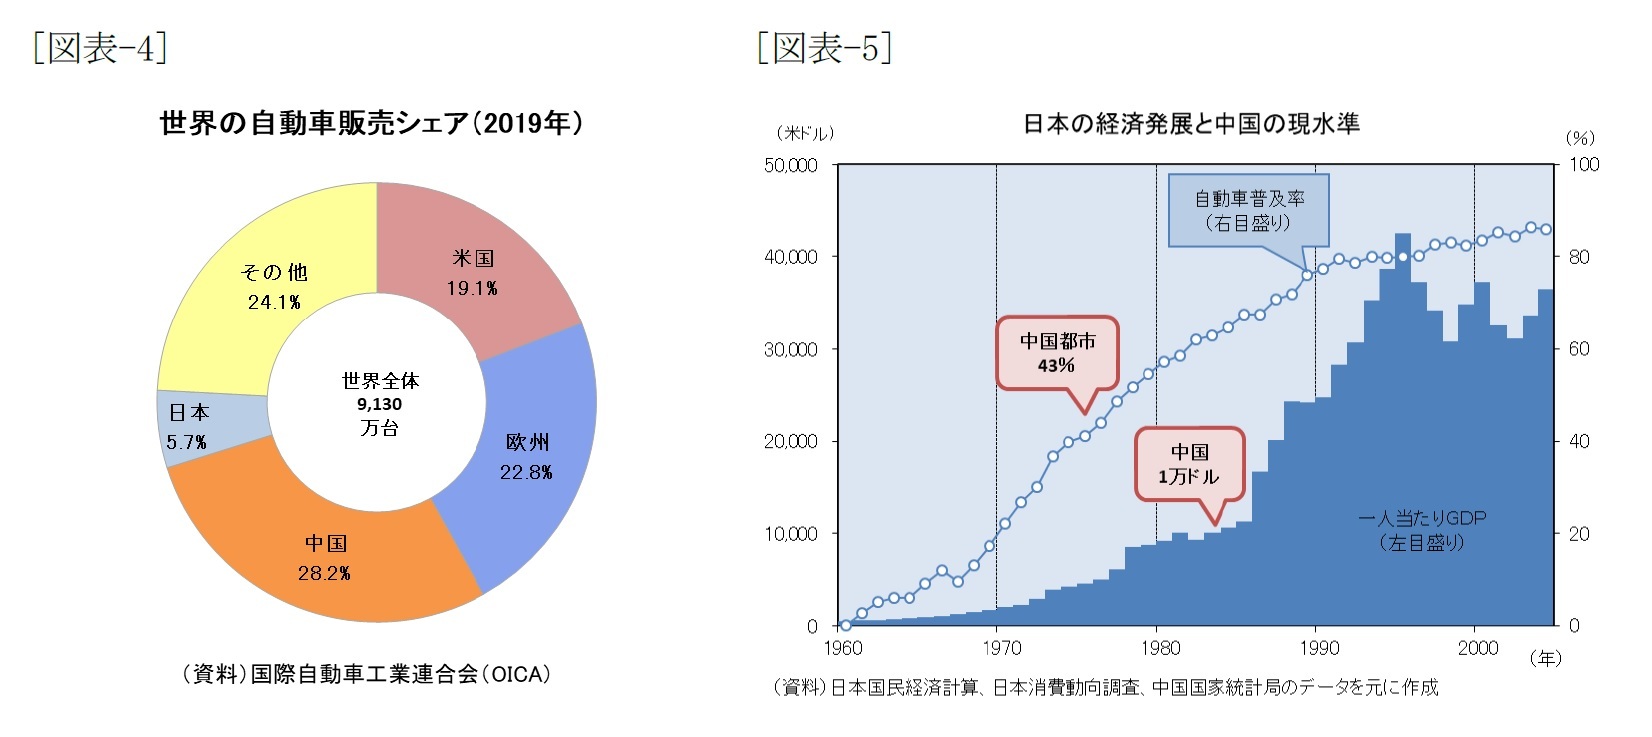 図表でみる中国経済 自動車市場編 ニッセイ基礎研究所